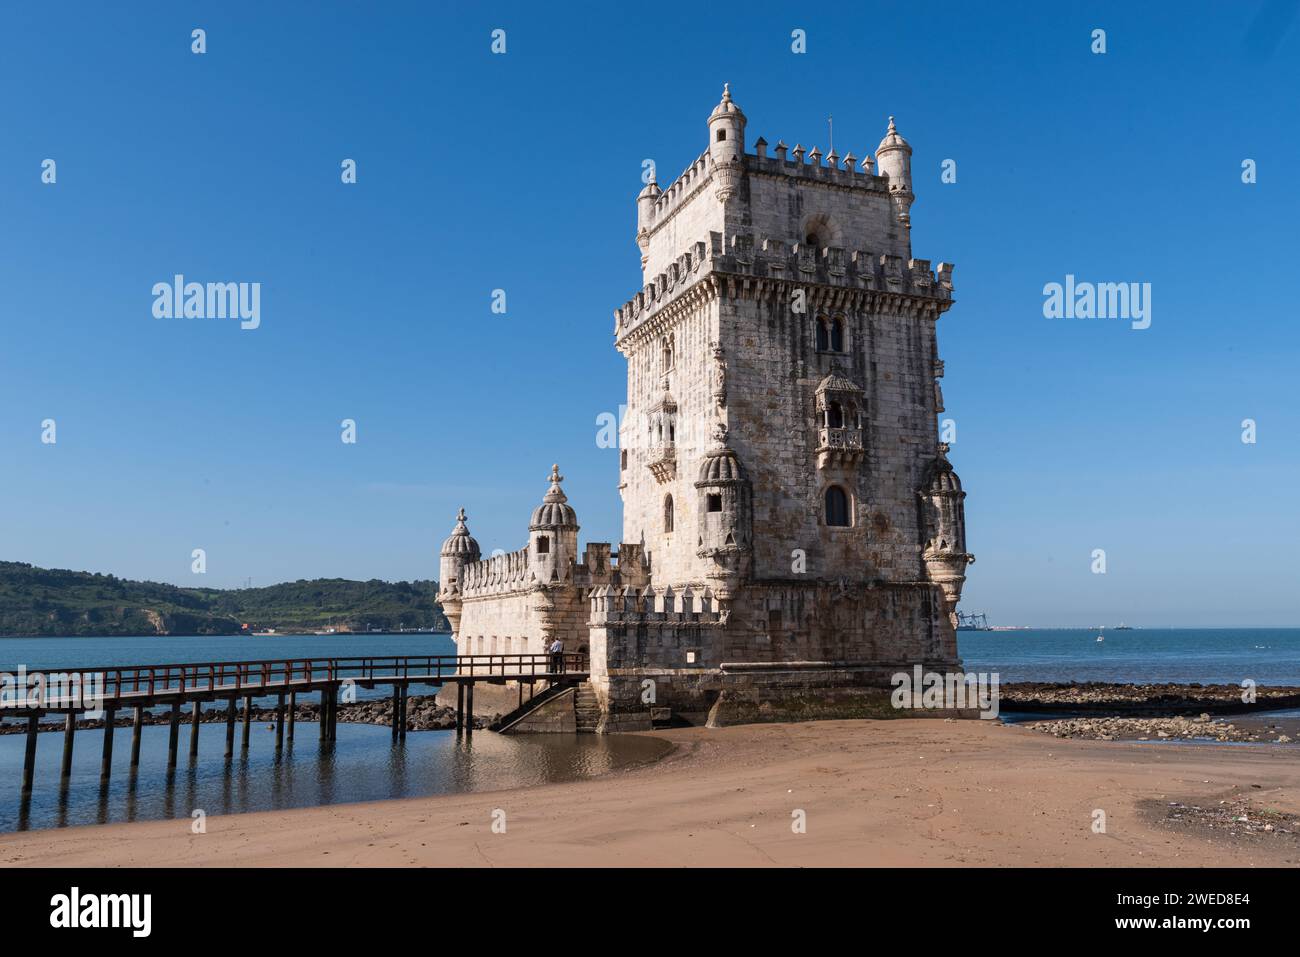 Explorez la Tour Belem de Lisbonne : un monument historique au bord du Tage, qui tisse l'histoire maritime du Portugal Banque D'Images